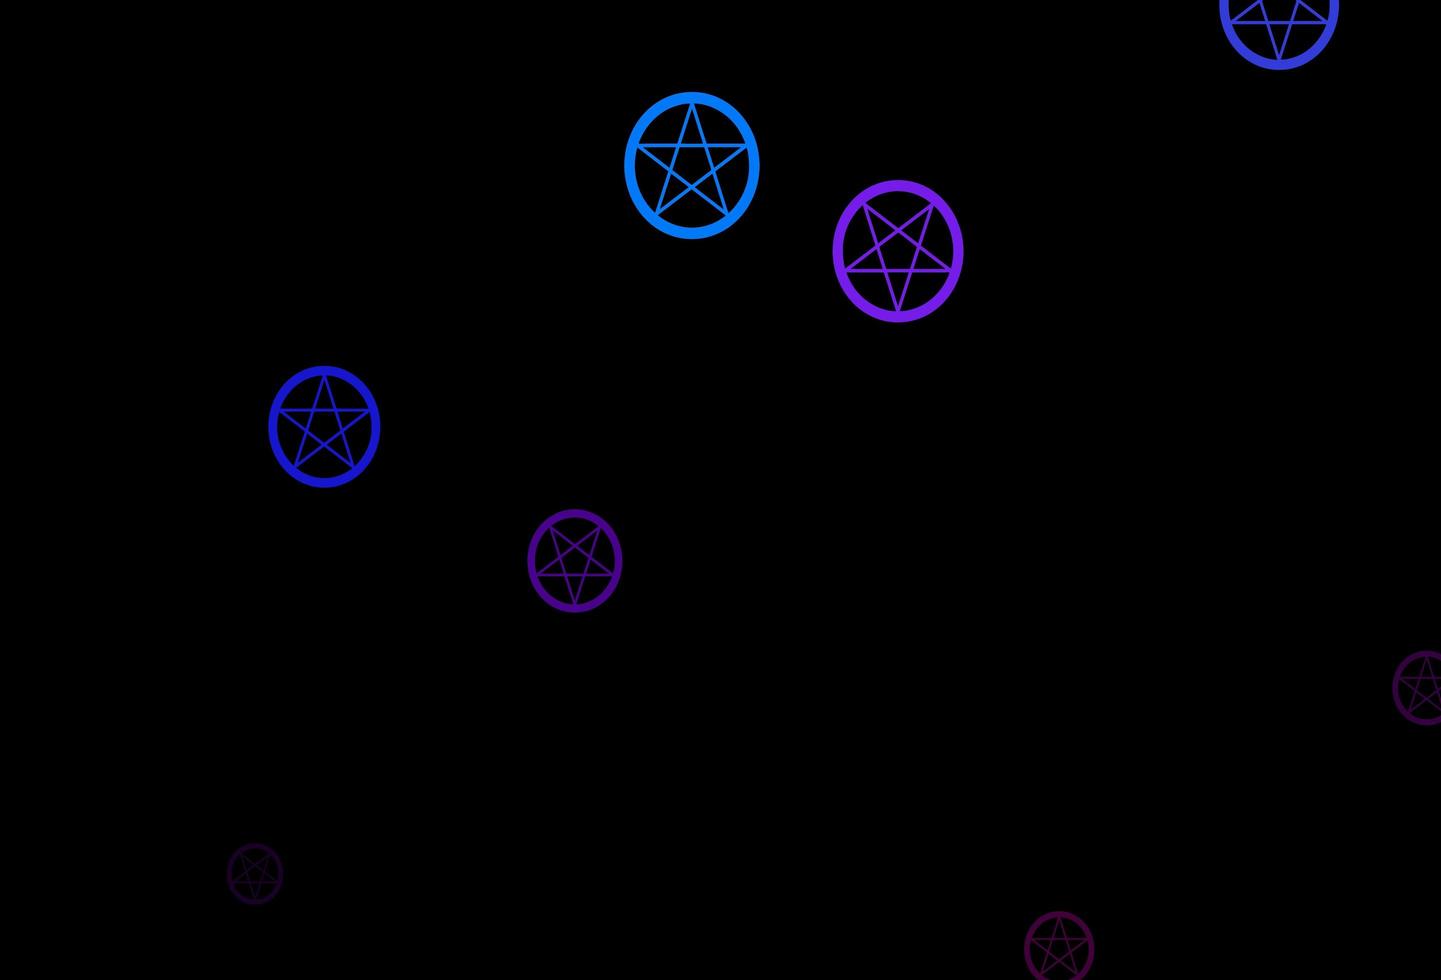 sfondo vettoriale multicolore scuro con simboli occulti.